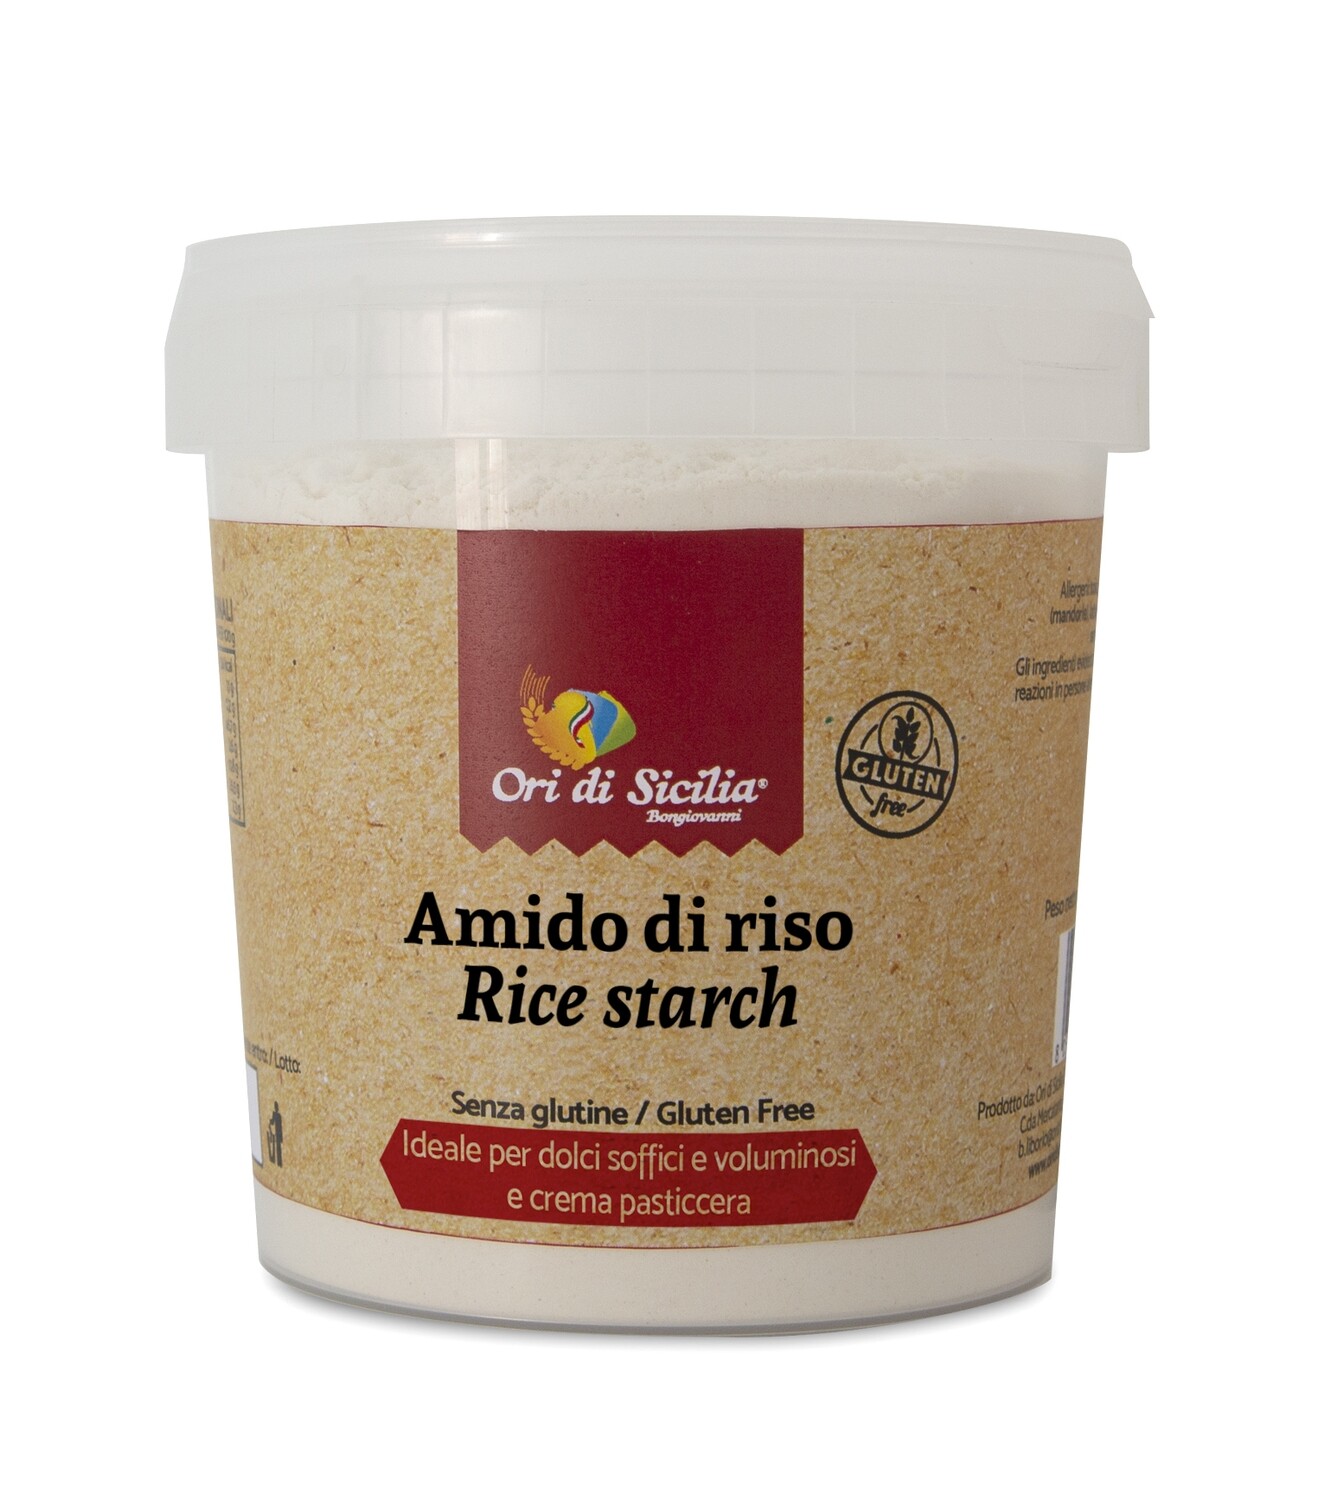 Amido di riso gr. 400 - Ori di Sicilia Bongiovanni